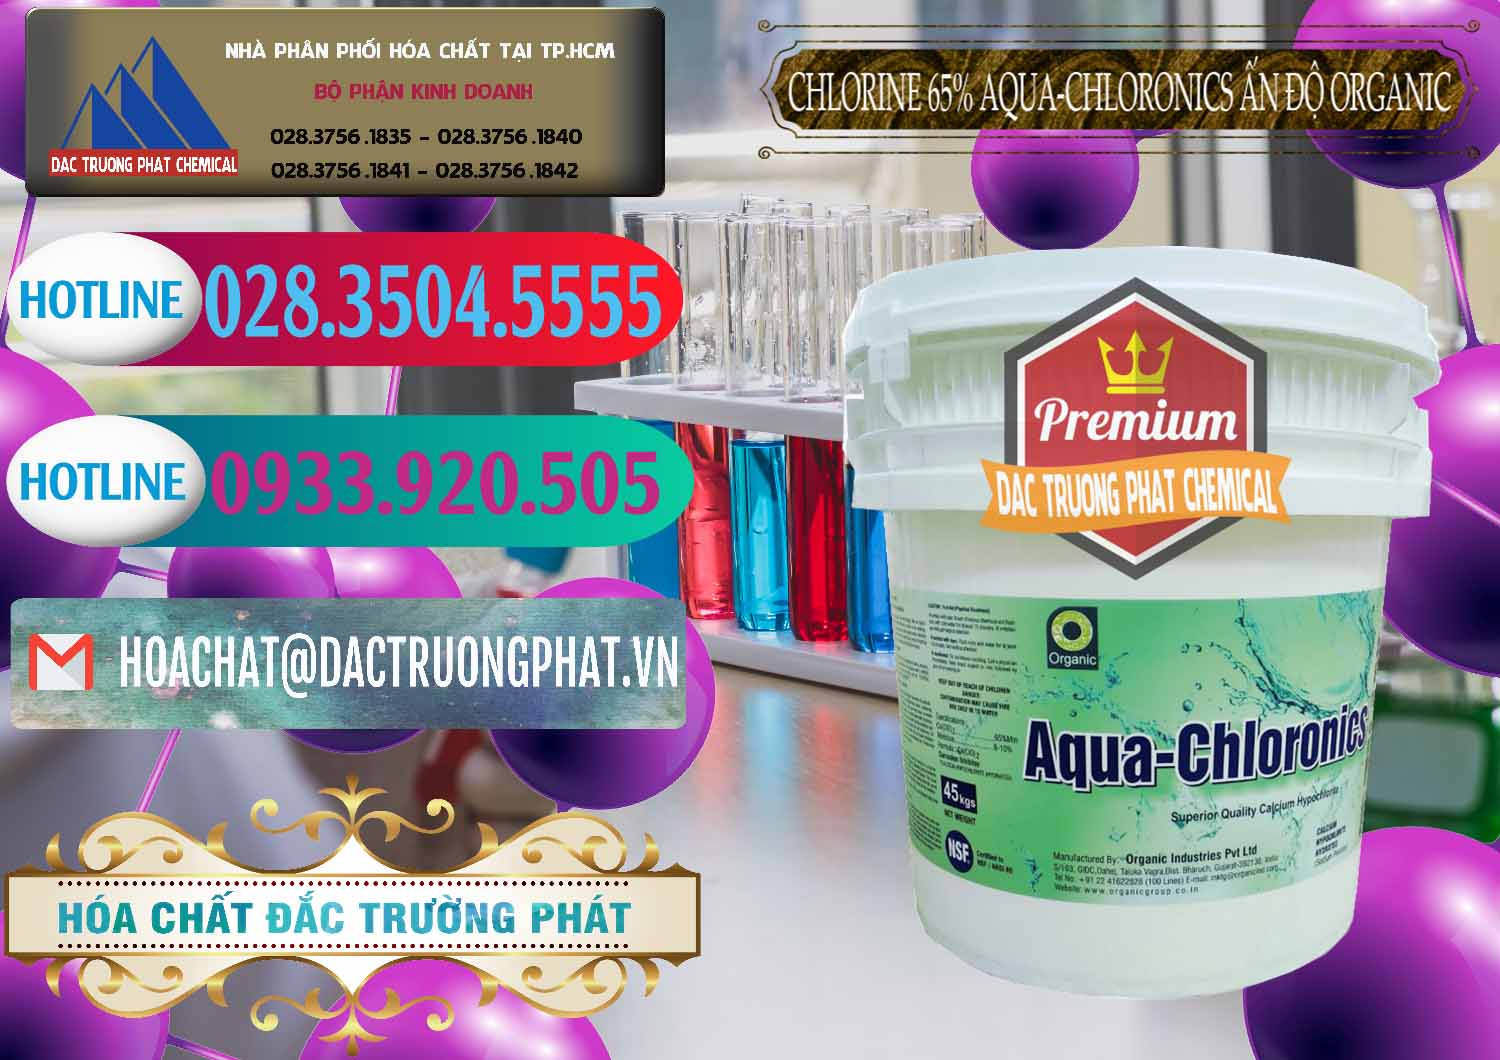 Cty chuyên phân phối và bán Chlorine – Clorin 65% Aqua-Chloronics Ấn Độ Organic India - 0210 - Cty cung cấp _ bán hóa chất tại TP.HCM - truongphat.vn